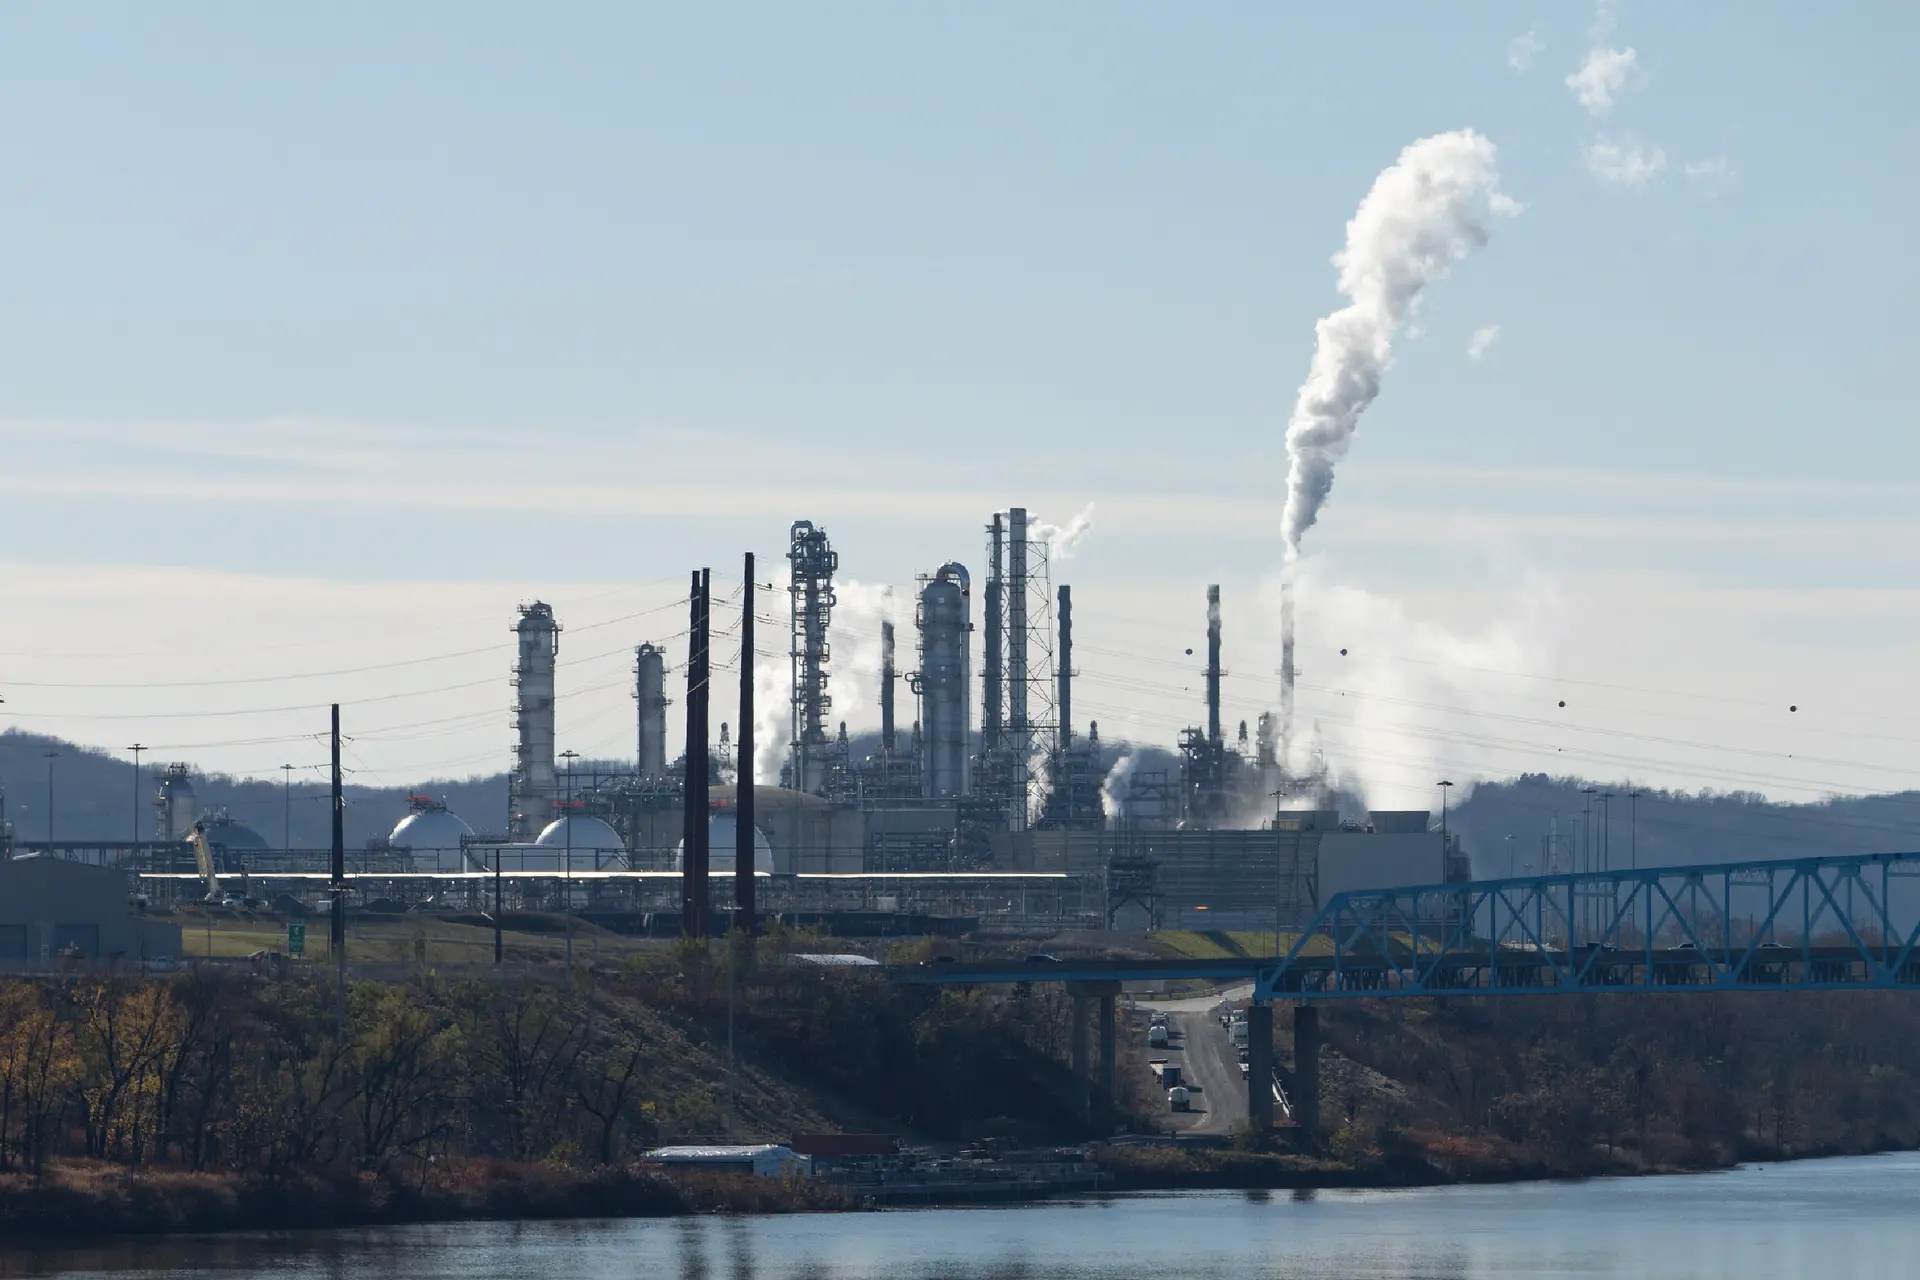 Tổ hợp hóa dầu Shell Pennsylvania sản xuất nhựa từ khí đốt tự nhiên “cracking” ở hạt Beaver, gần Pittsburgh, PA. (Ảnh: Mark Dixon/Flickr)